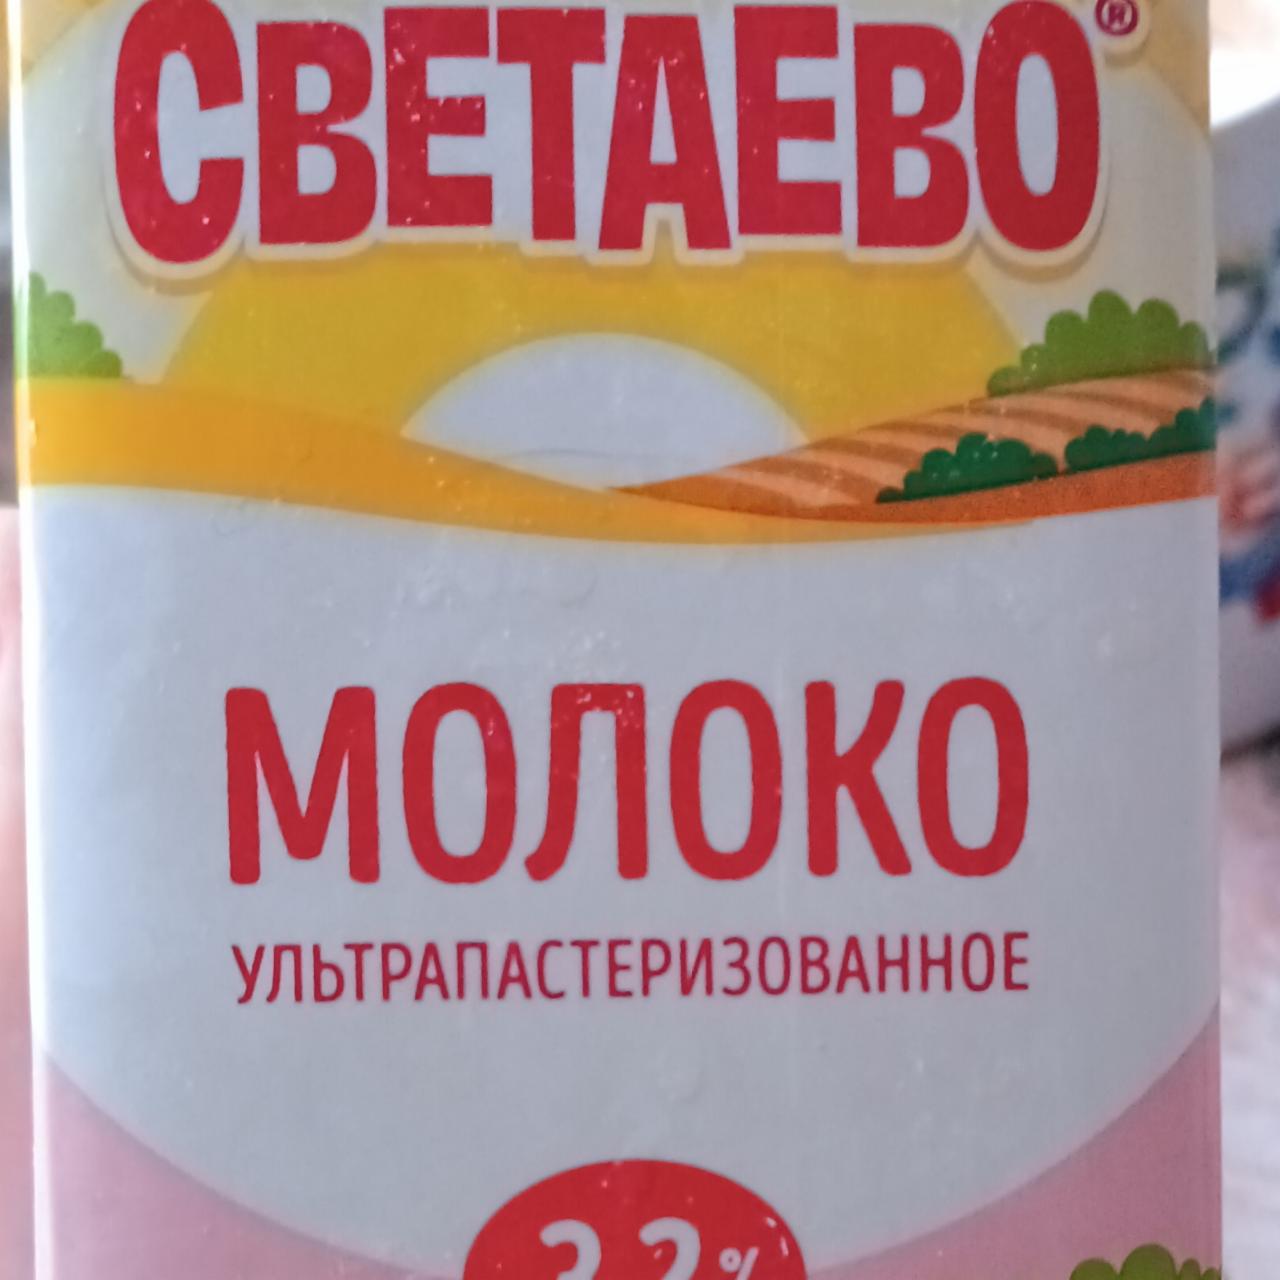 Фото - Молоко 3.2% Светаево